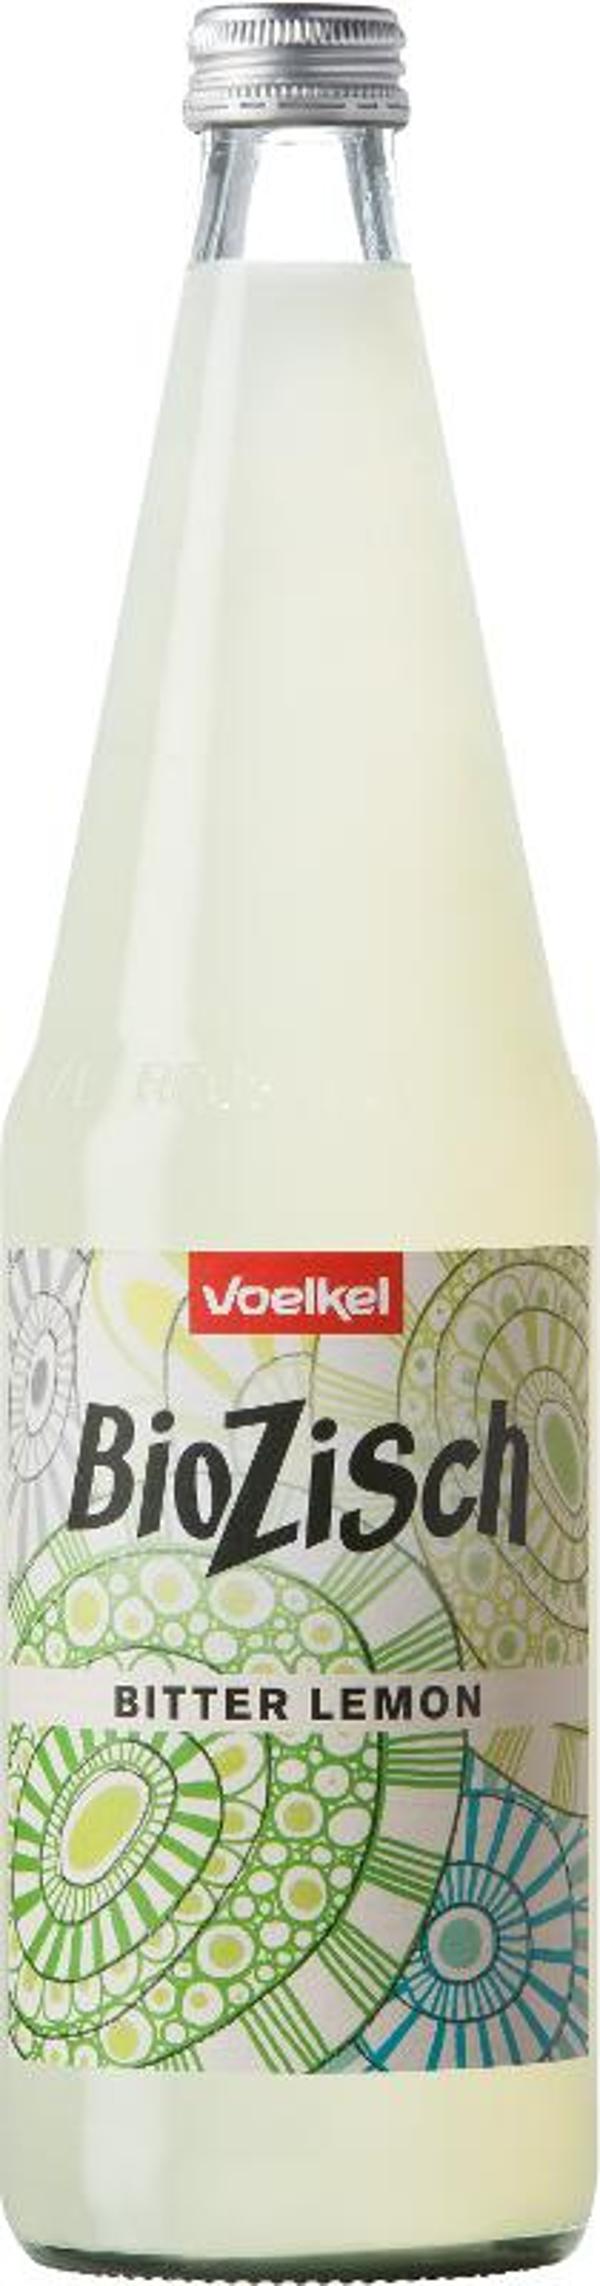 Produktfoto zu BioZisch Bitter-Lemon 0,7 l Voelkel